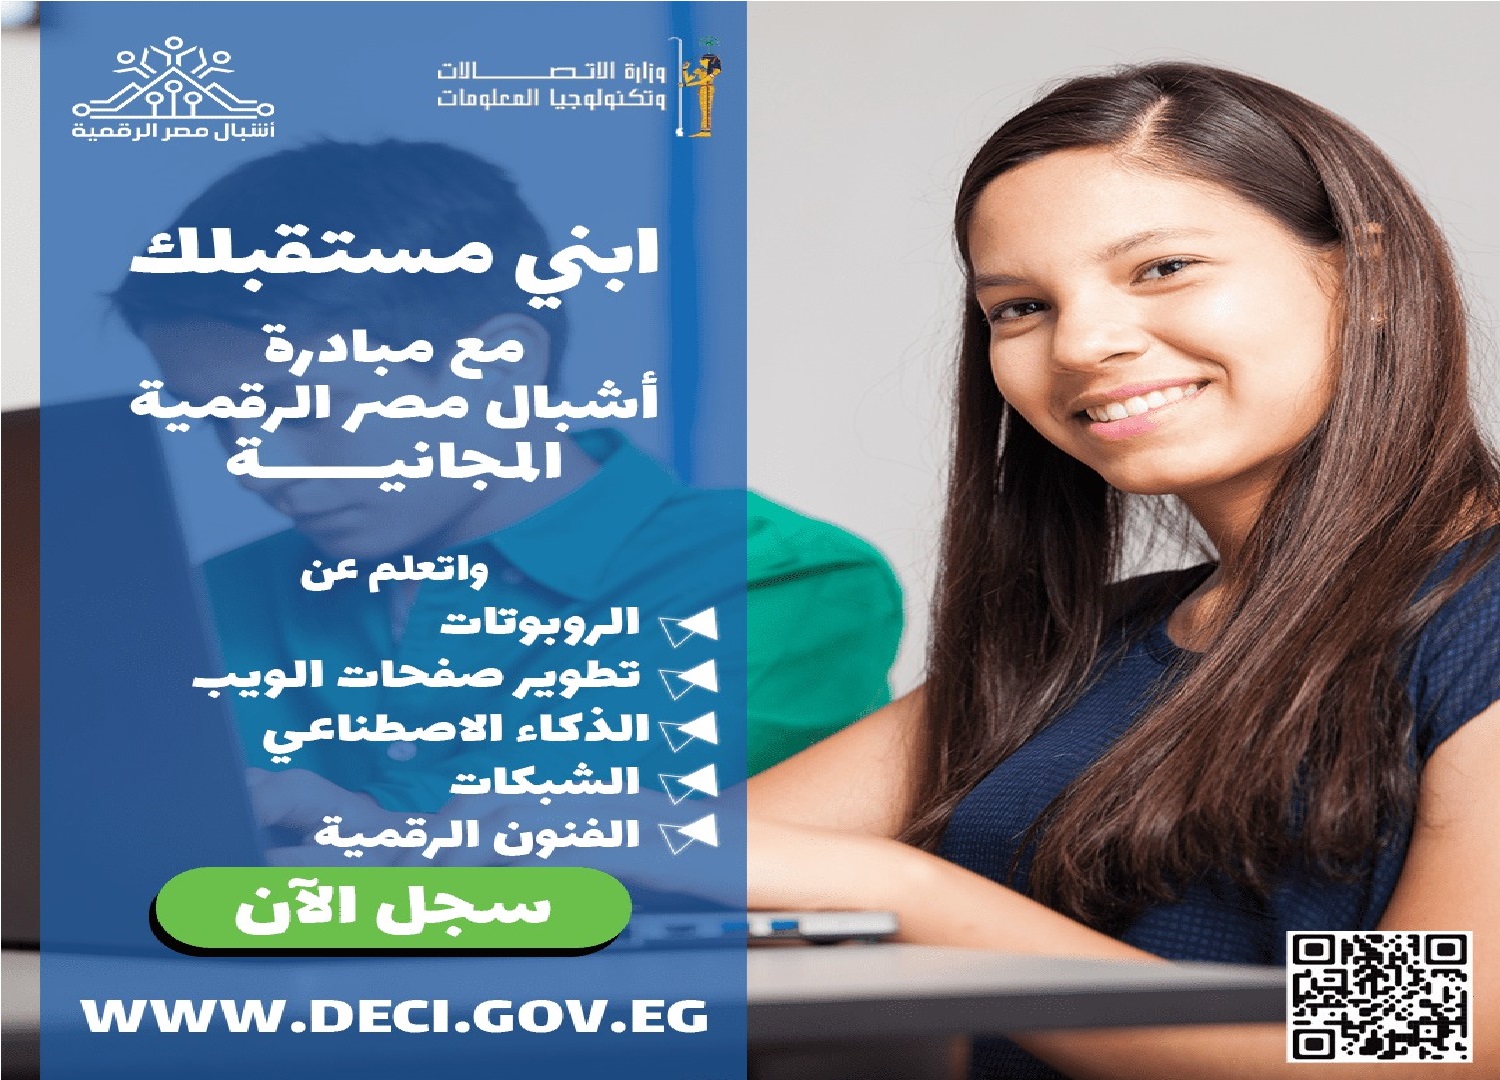 مبادرة أشبال مصر الرقمية: فرصة لأولادك لتعلم البرمجة والذكاء الاصطناعي مجانا بمنحة من الدولة